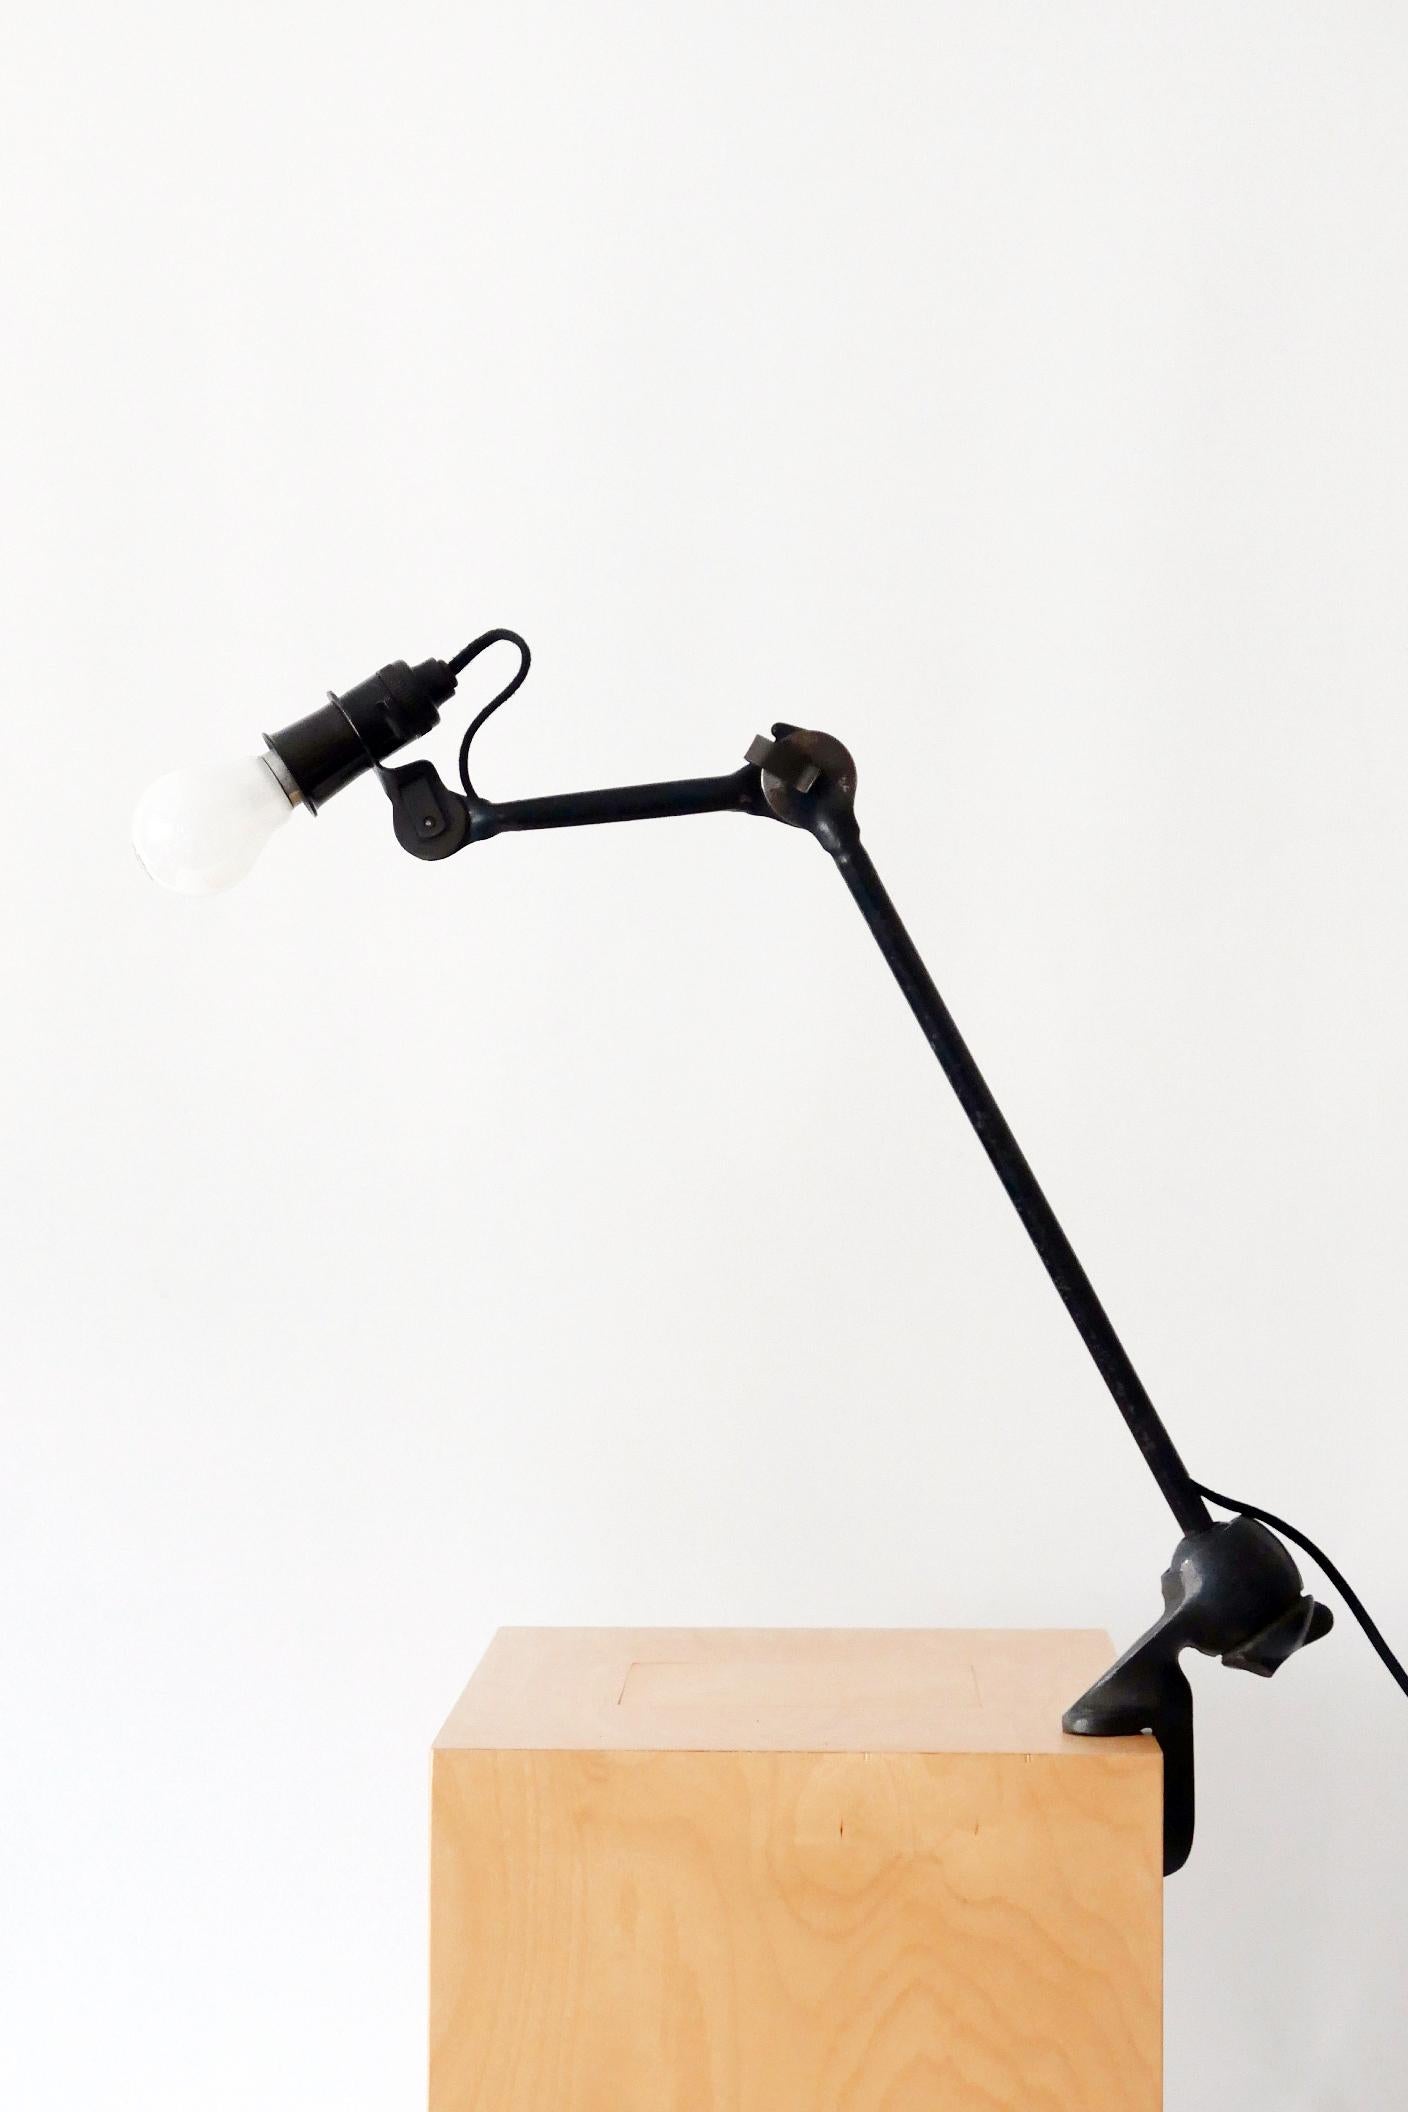 Modernist Task Light or Clamp Table Lamp by Bernard-Albin Gras for Gras, 1920s For Sale 1